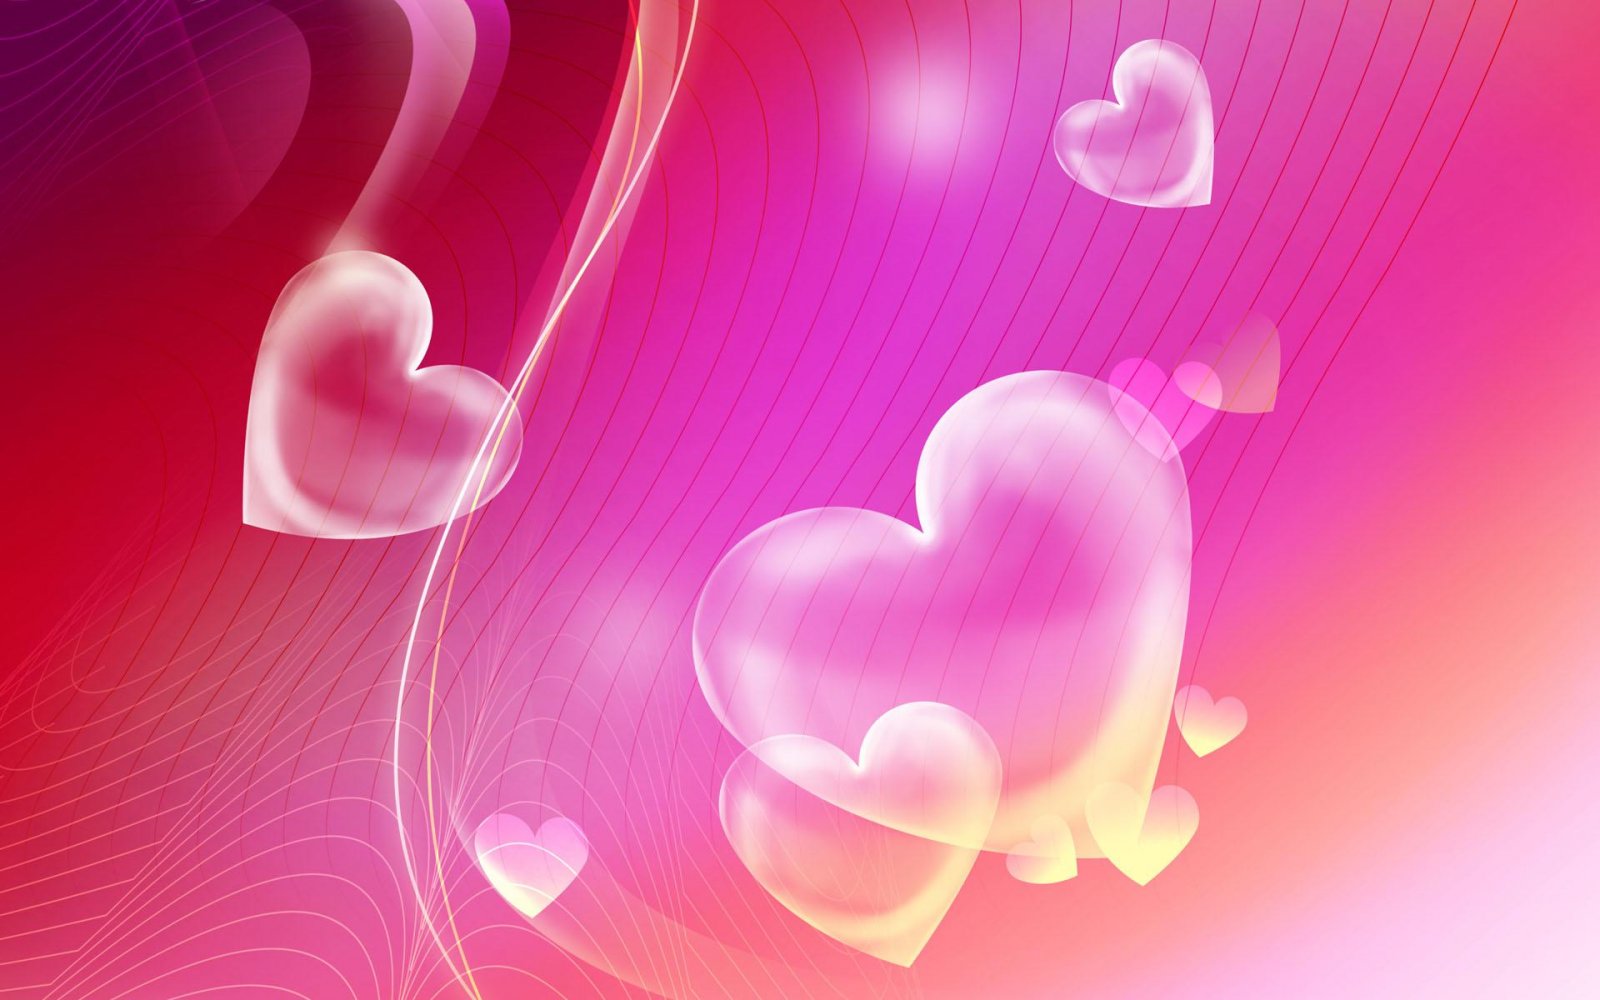 Free download Fondos de pantalla de corazones Wallpapers de corazones  [1600x1000] for your Desktop, Mobile & Tablet | Explore 72+ Heart  Background Pictures | Heart Wallpapers, Heart Background, Heart Wallpapers  Free